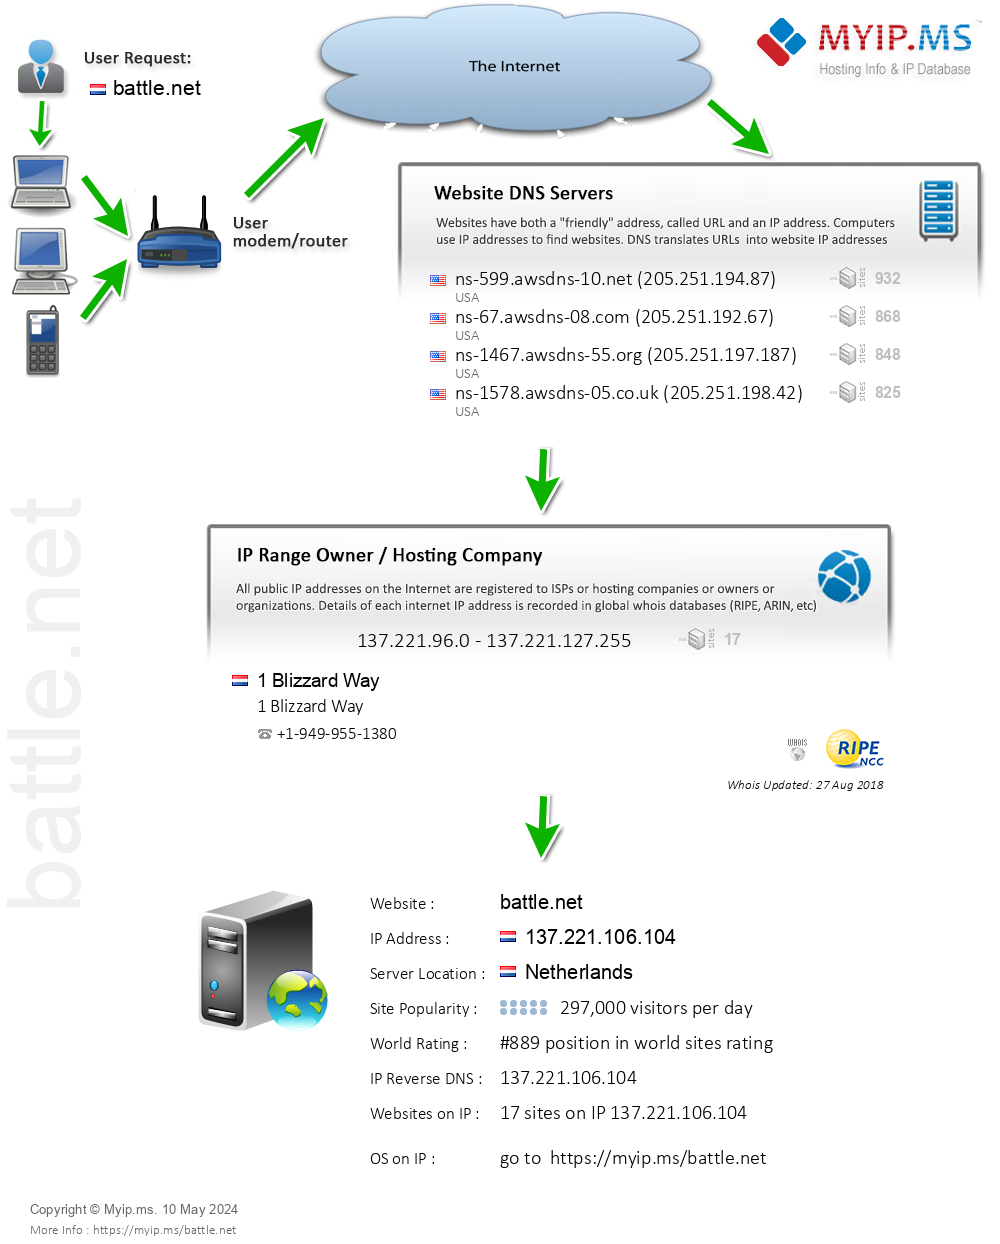 Battle.net - Website Hosting Visual IP Diagram